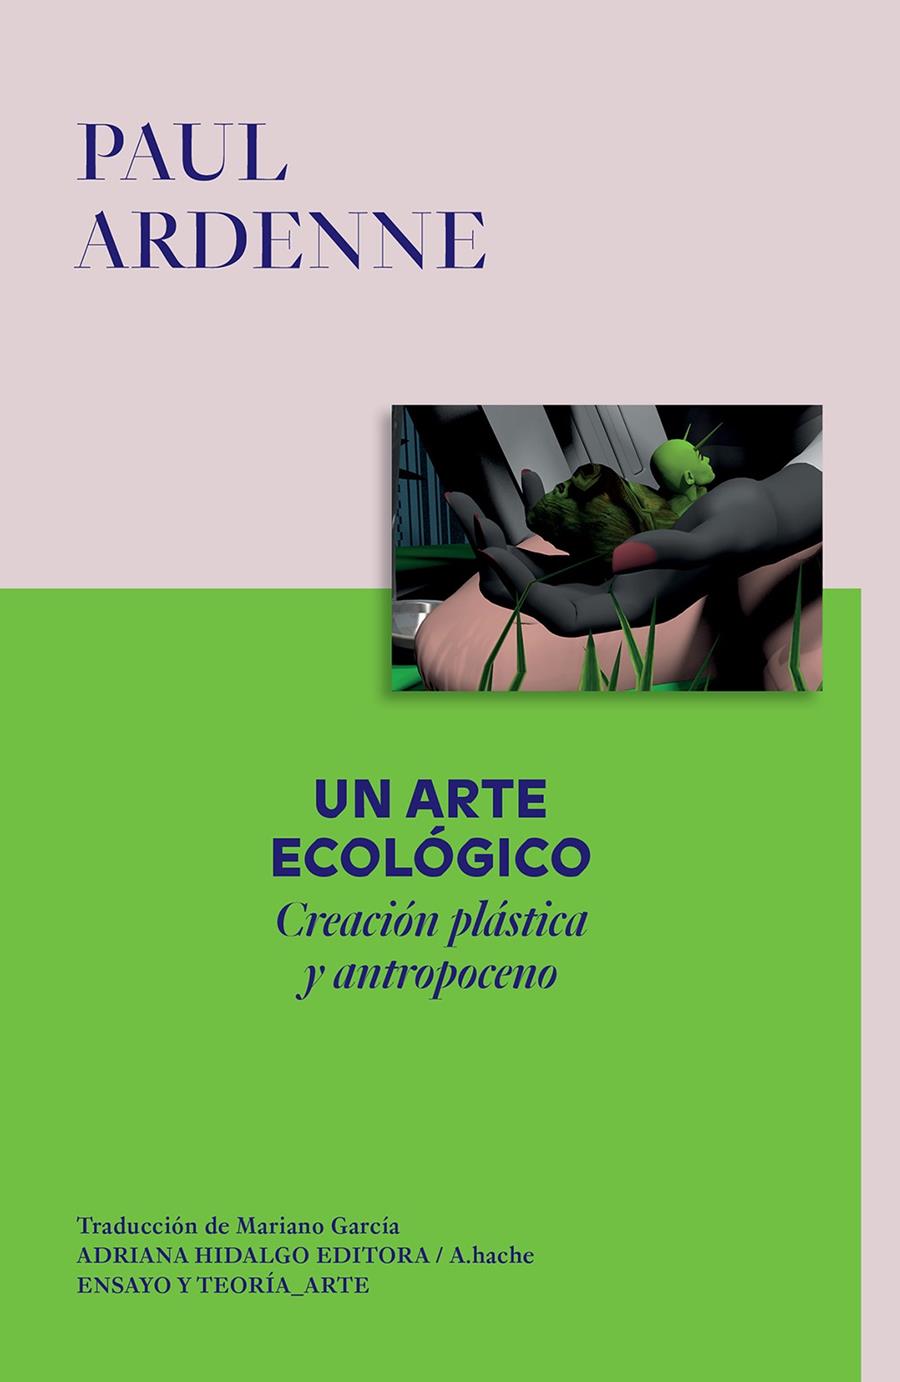 Un arte ecológico | Ardenne, Paul | Cooperativa autogestionària